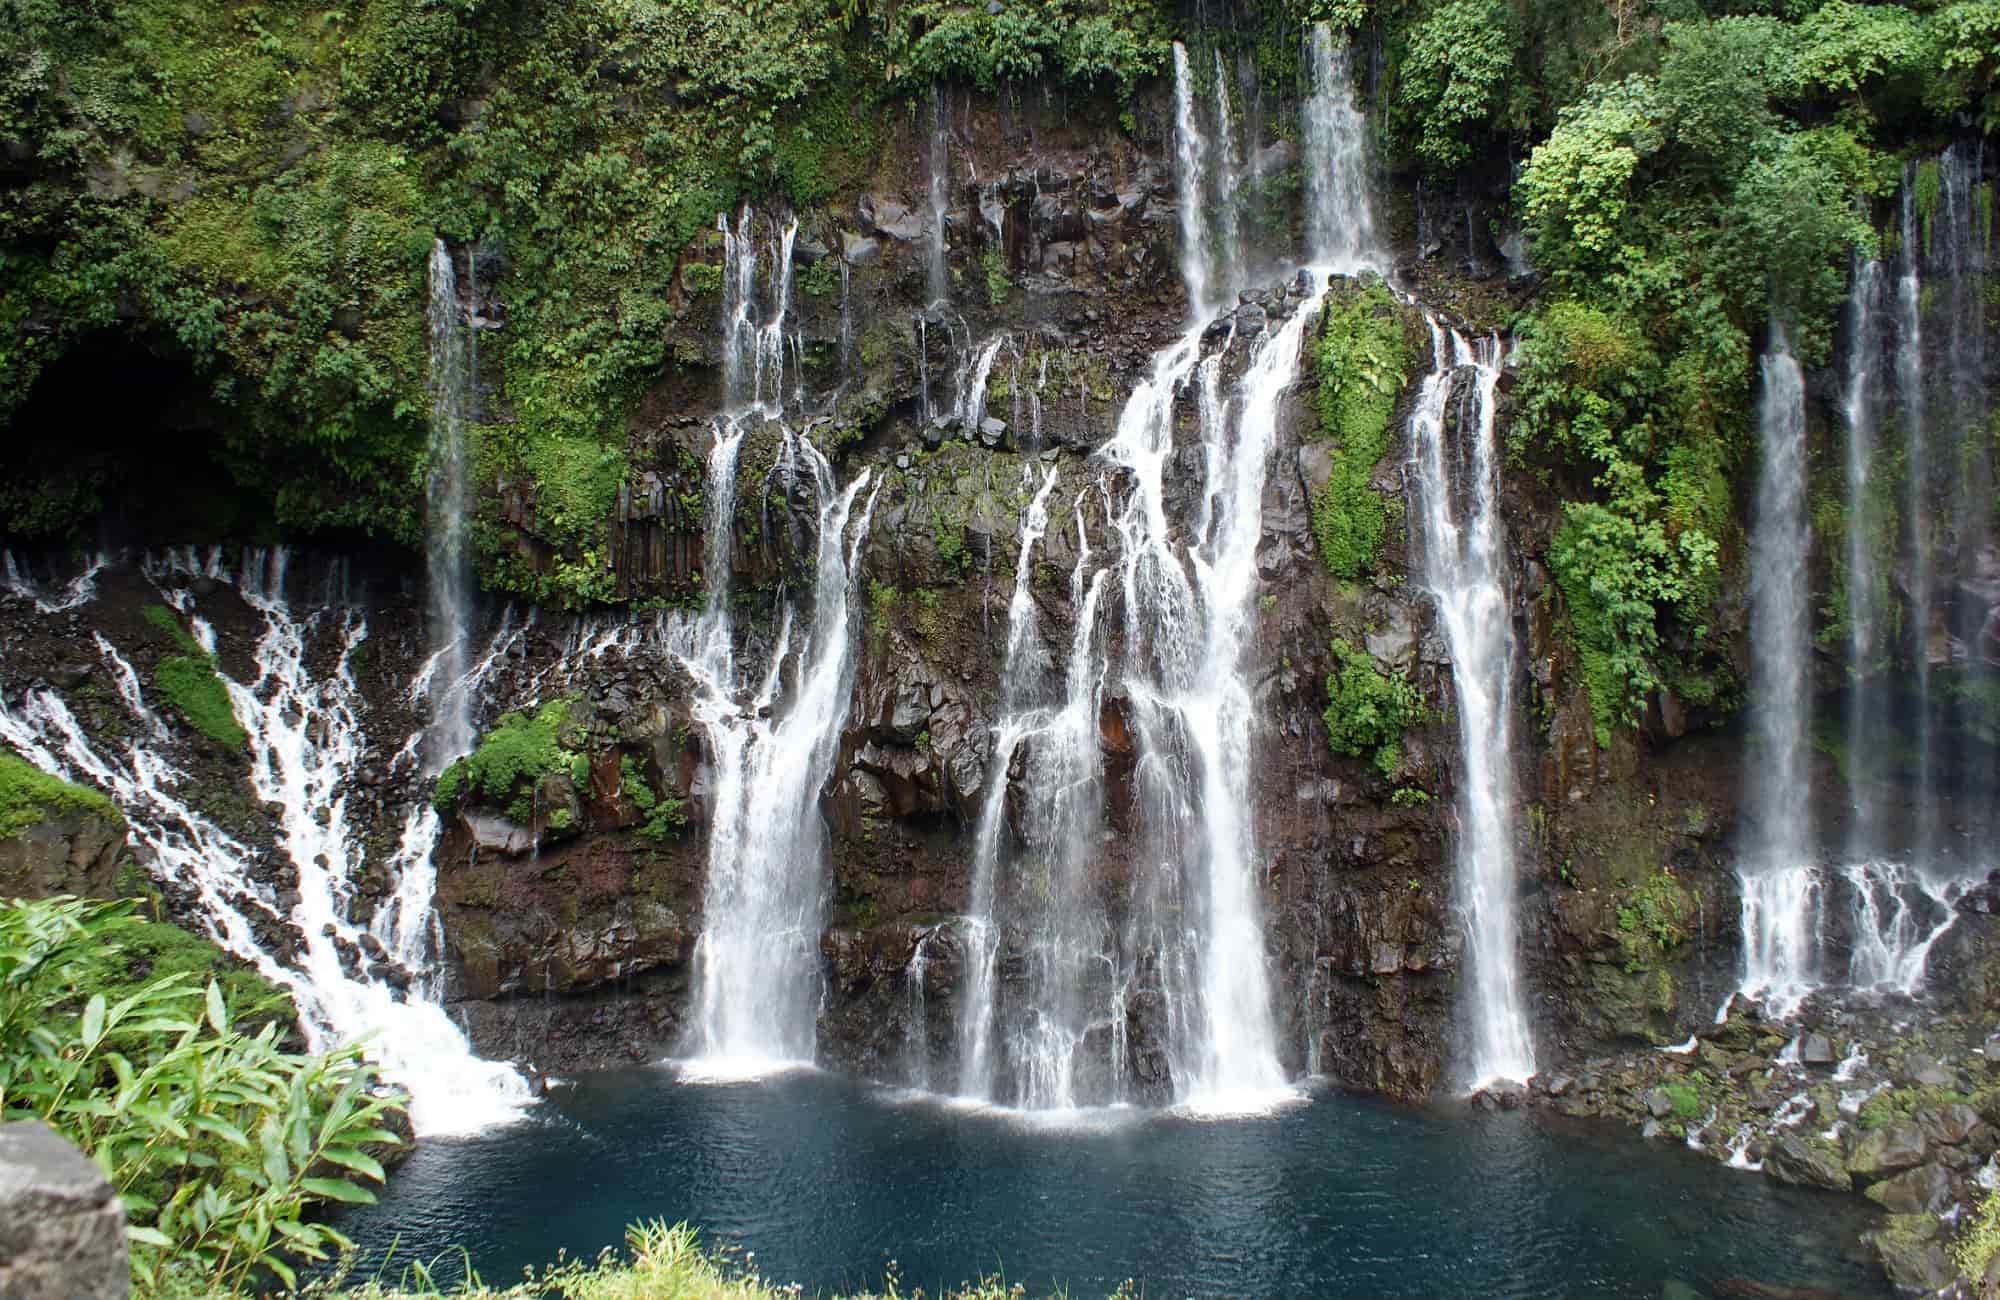 Voyage à La Réunion - Les cascades de La Réunion - Amplitudes